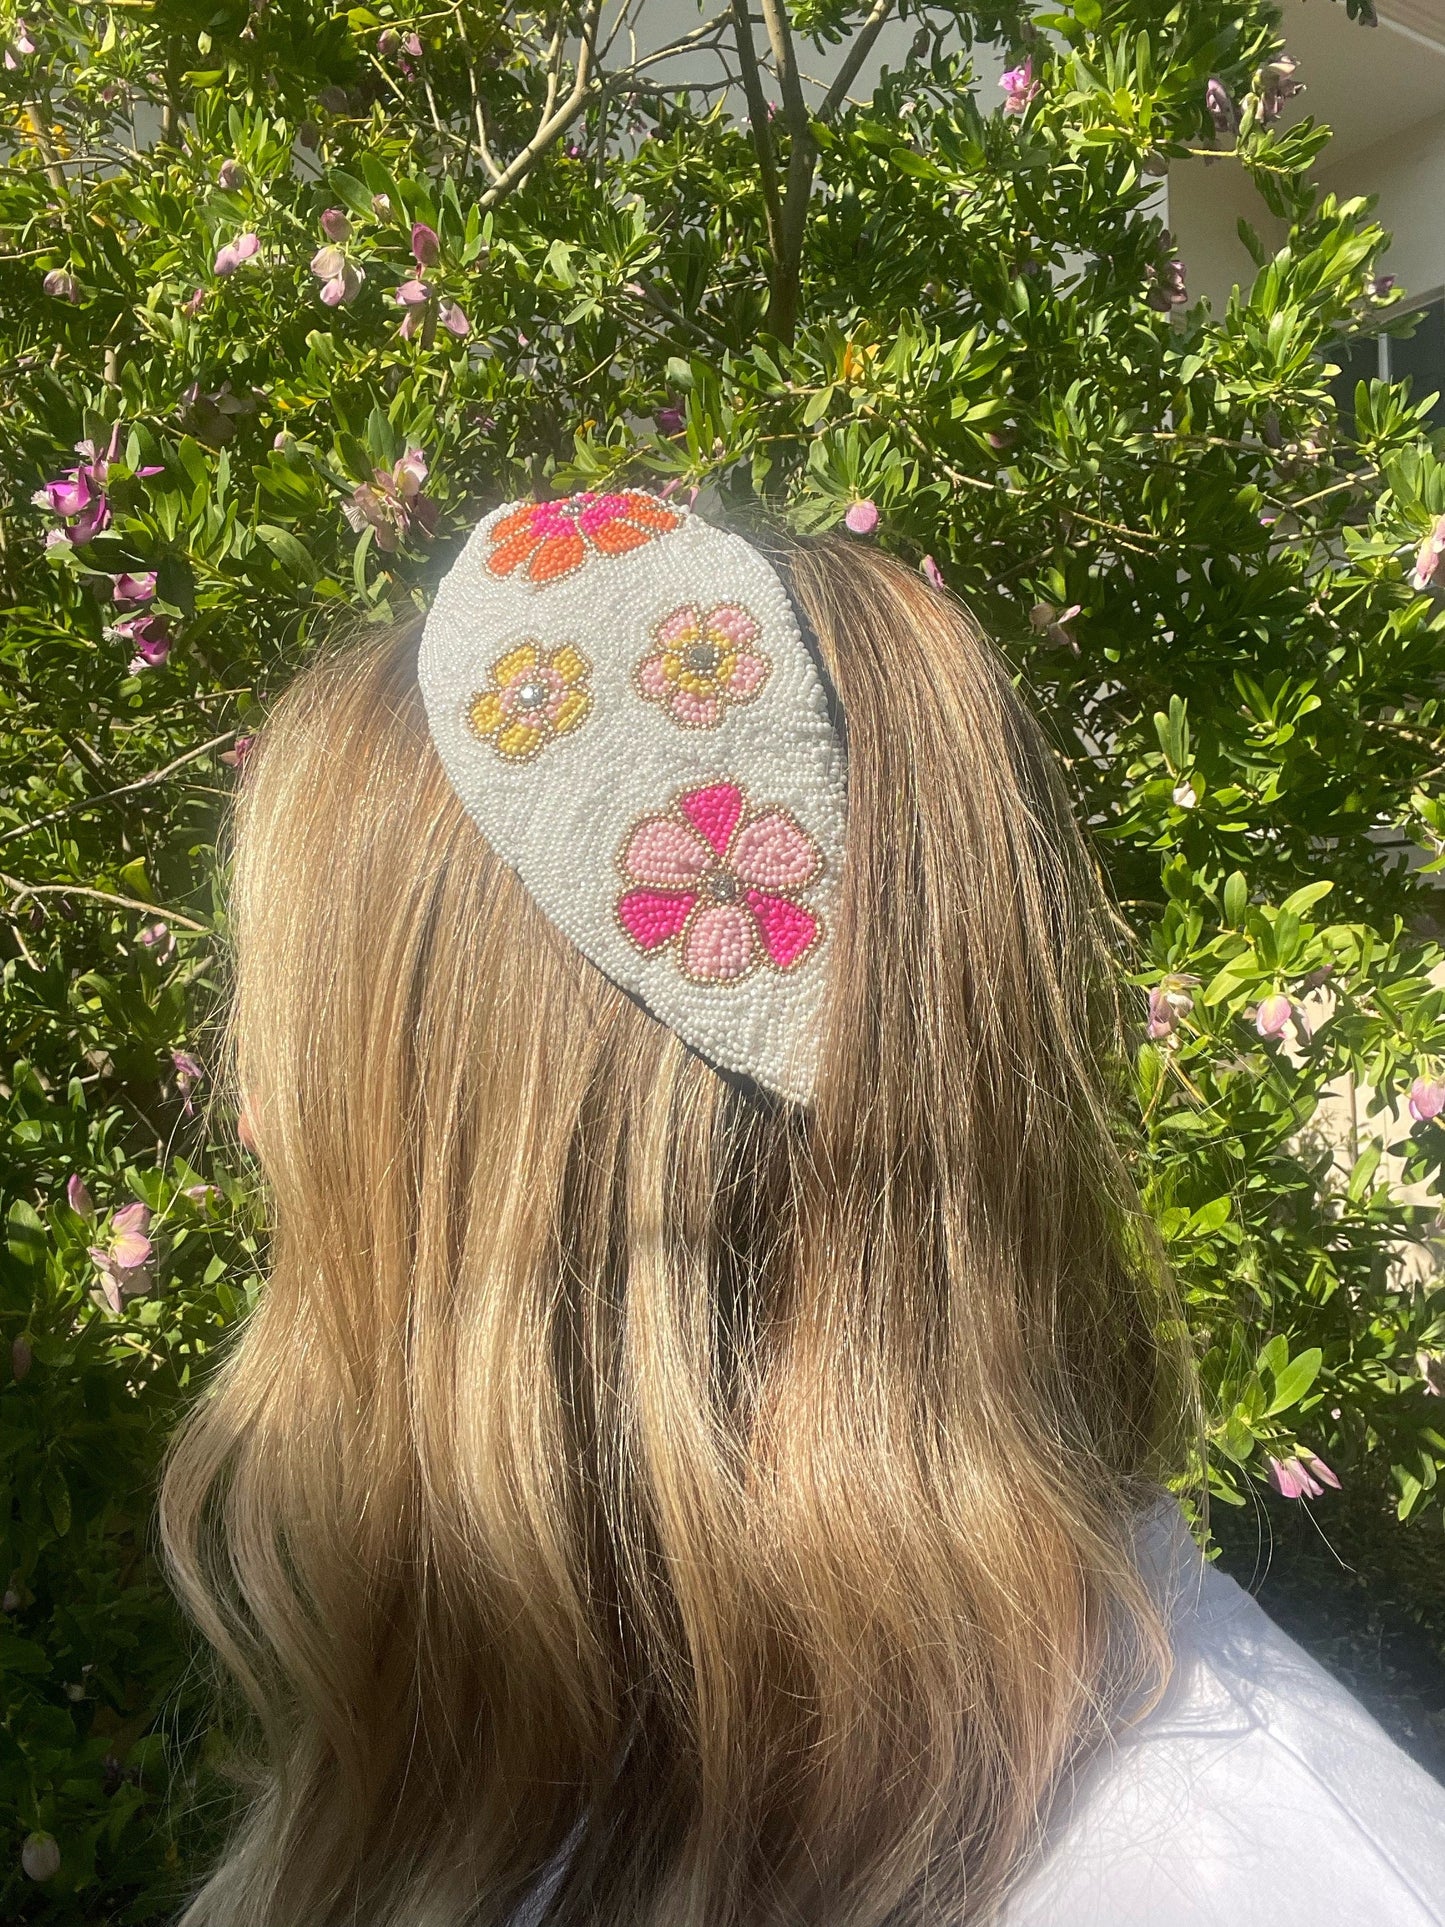 Summer Beaded Headbands - 4 varieties